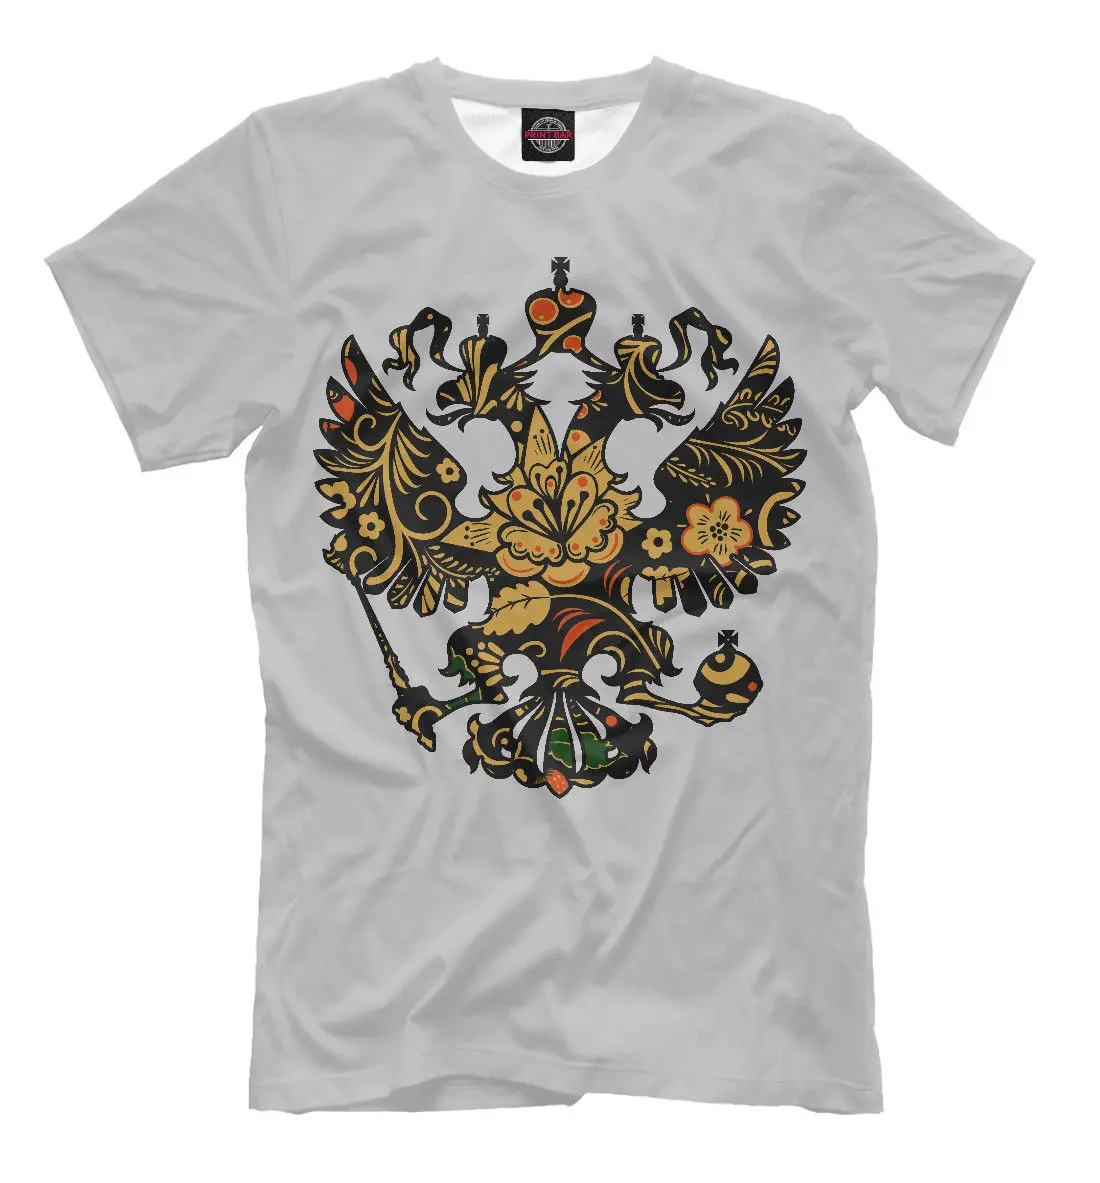 

Футболка мужская для фитнеса в стиле хип-хоп Cimvolika rfsymbol of The Rf, новая рубашка с изображением герба России в Москве и флага символов рубежа